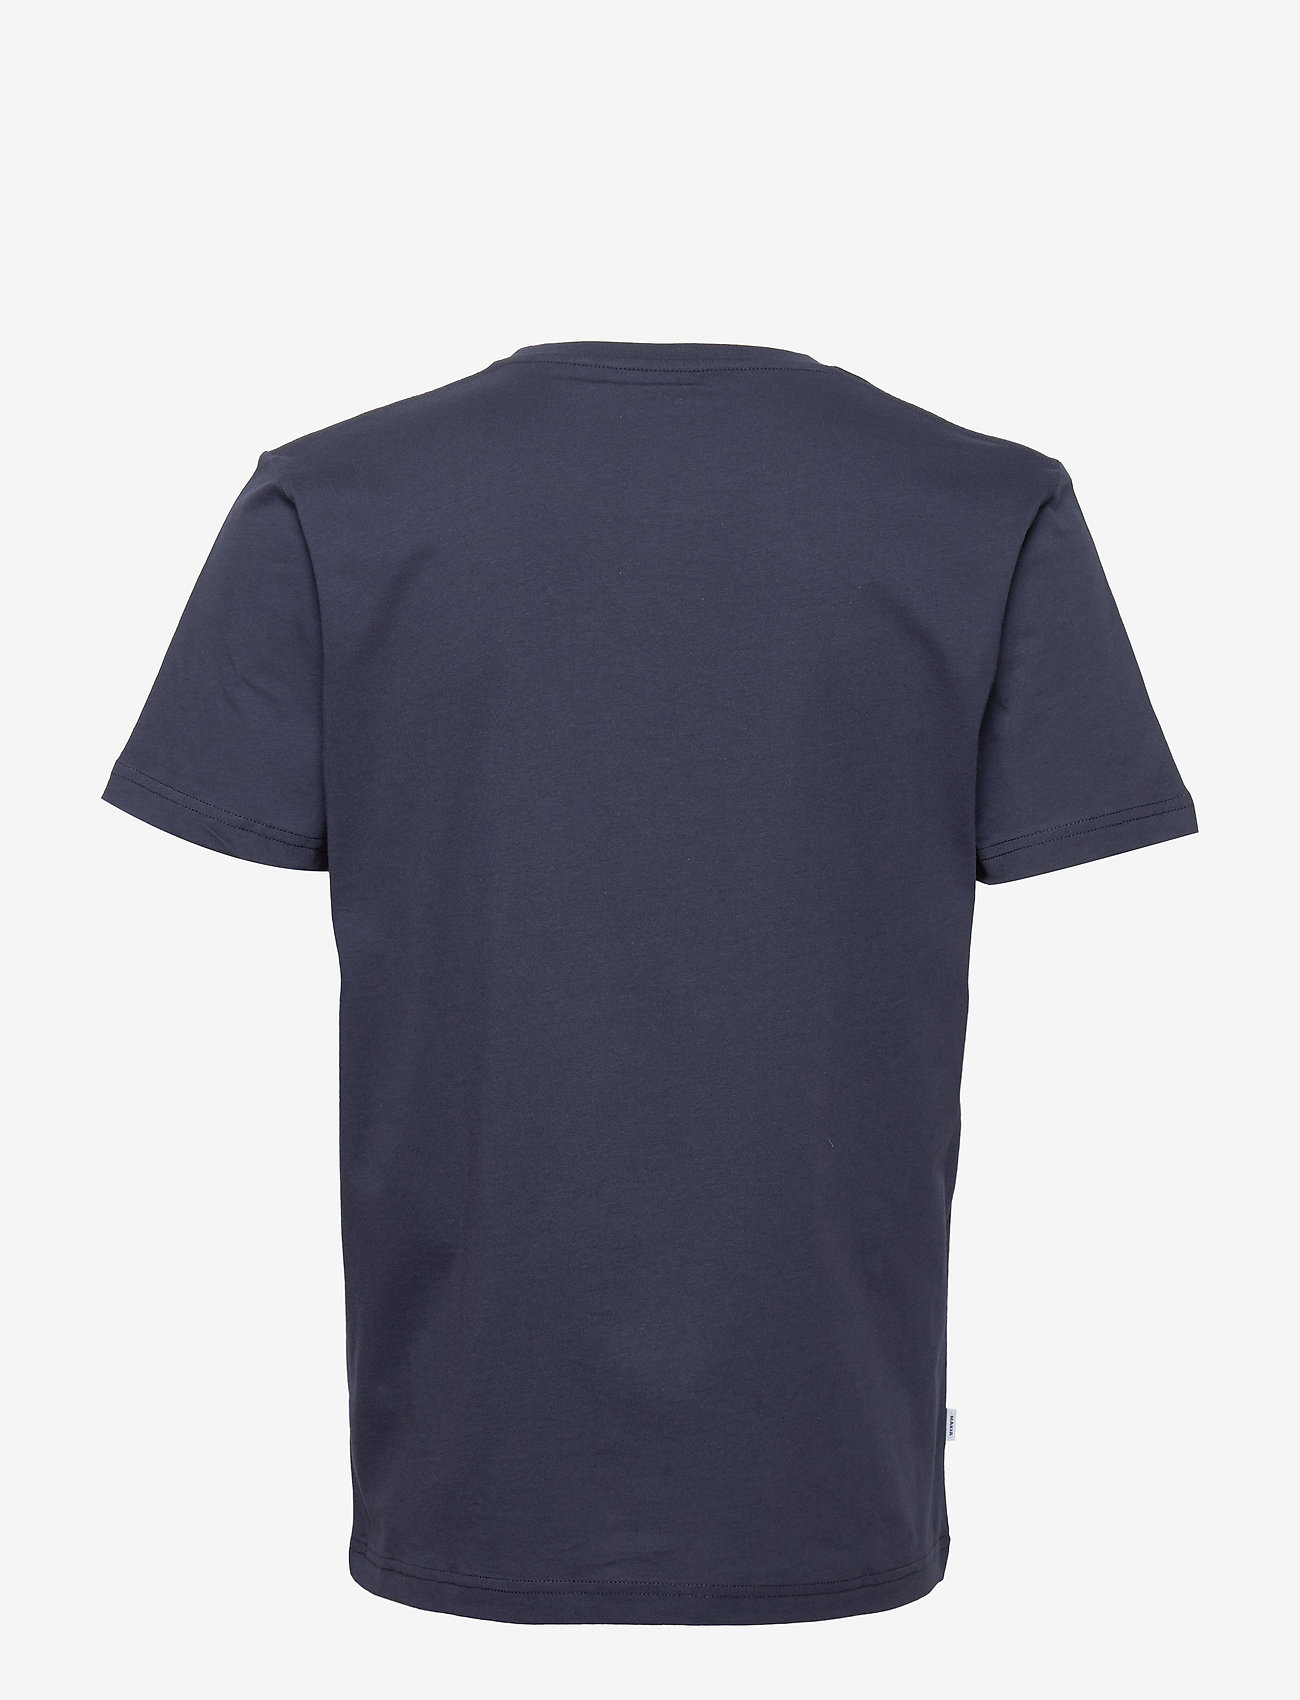 Makia - Brand T-Shirt - die niedrigsten preise - dark blue - 1